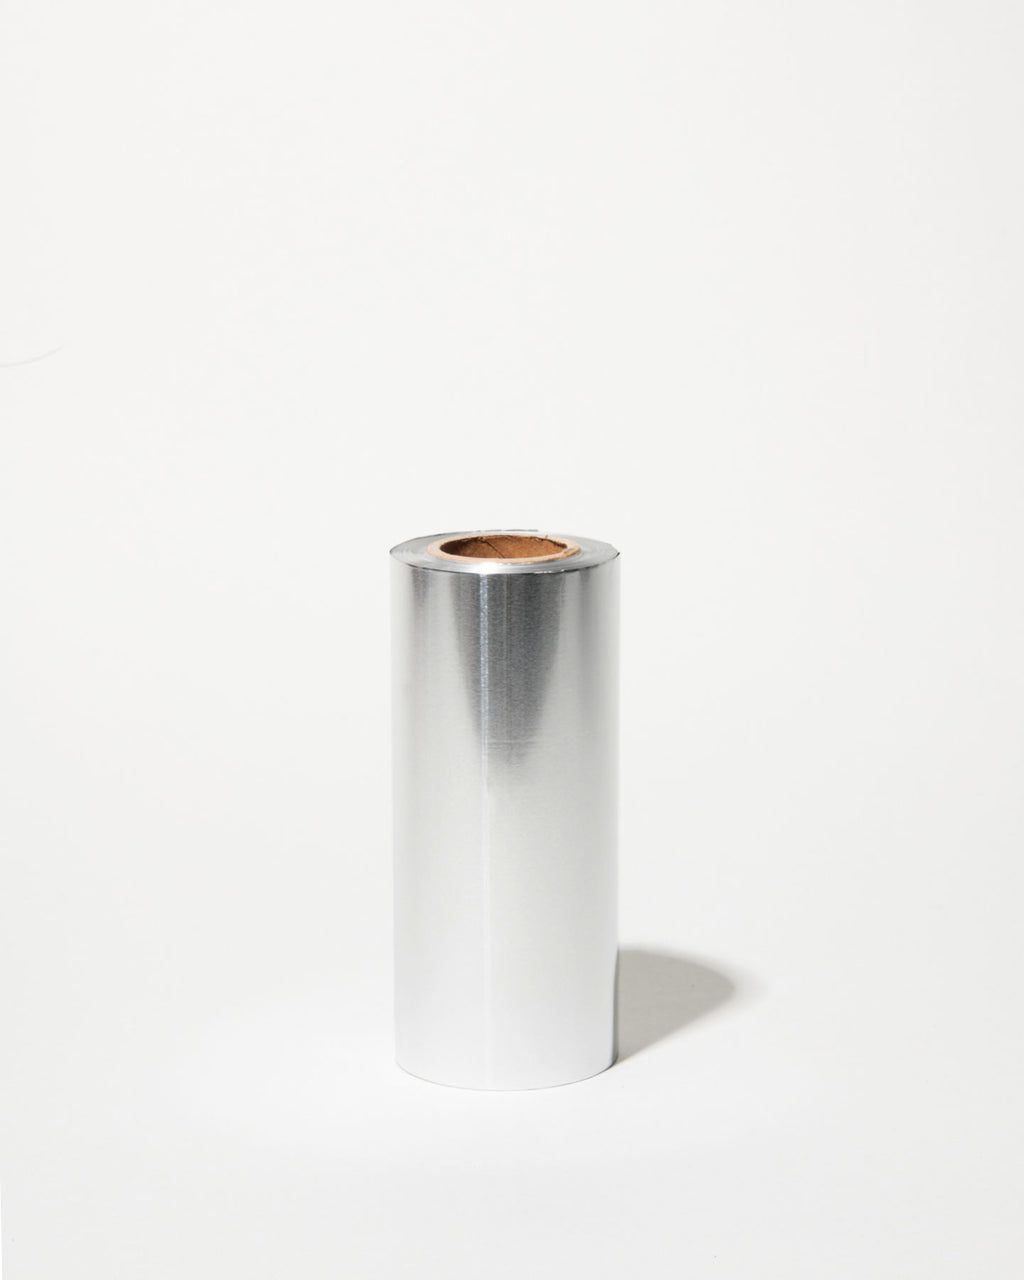 Framar Distributor FOIL: Star Struck, Embossed Medium Silver, Small Roll  320 ft - 1 roll